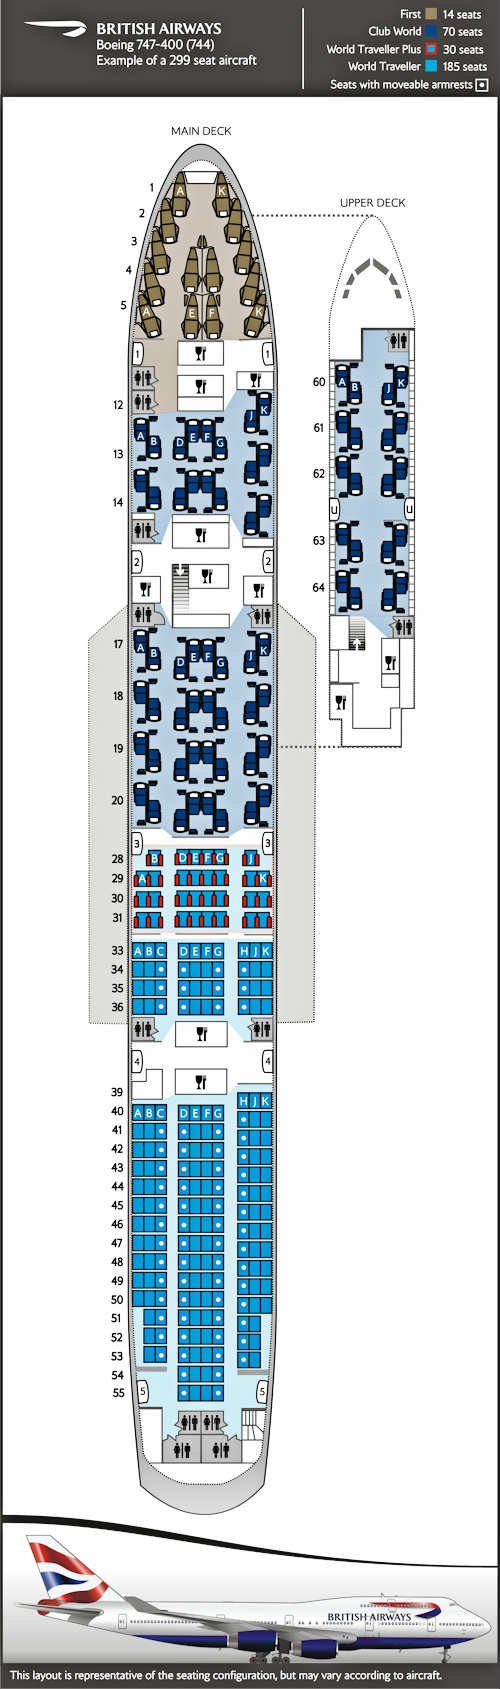 Sitzplan für Boeing 747-400, 4 Klassen 299 Sitzplätze.